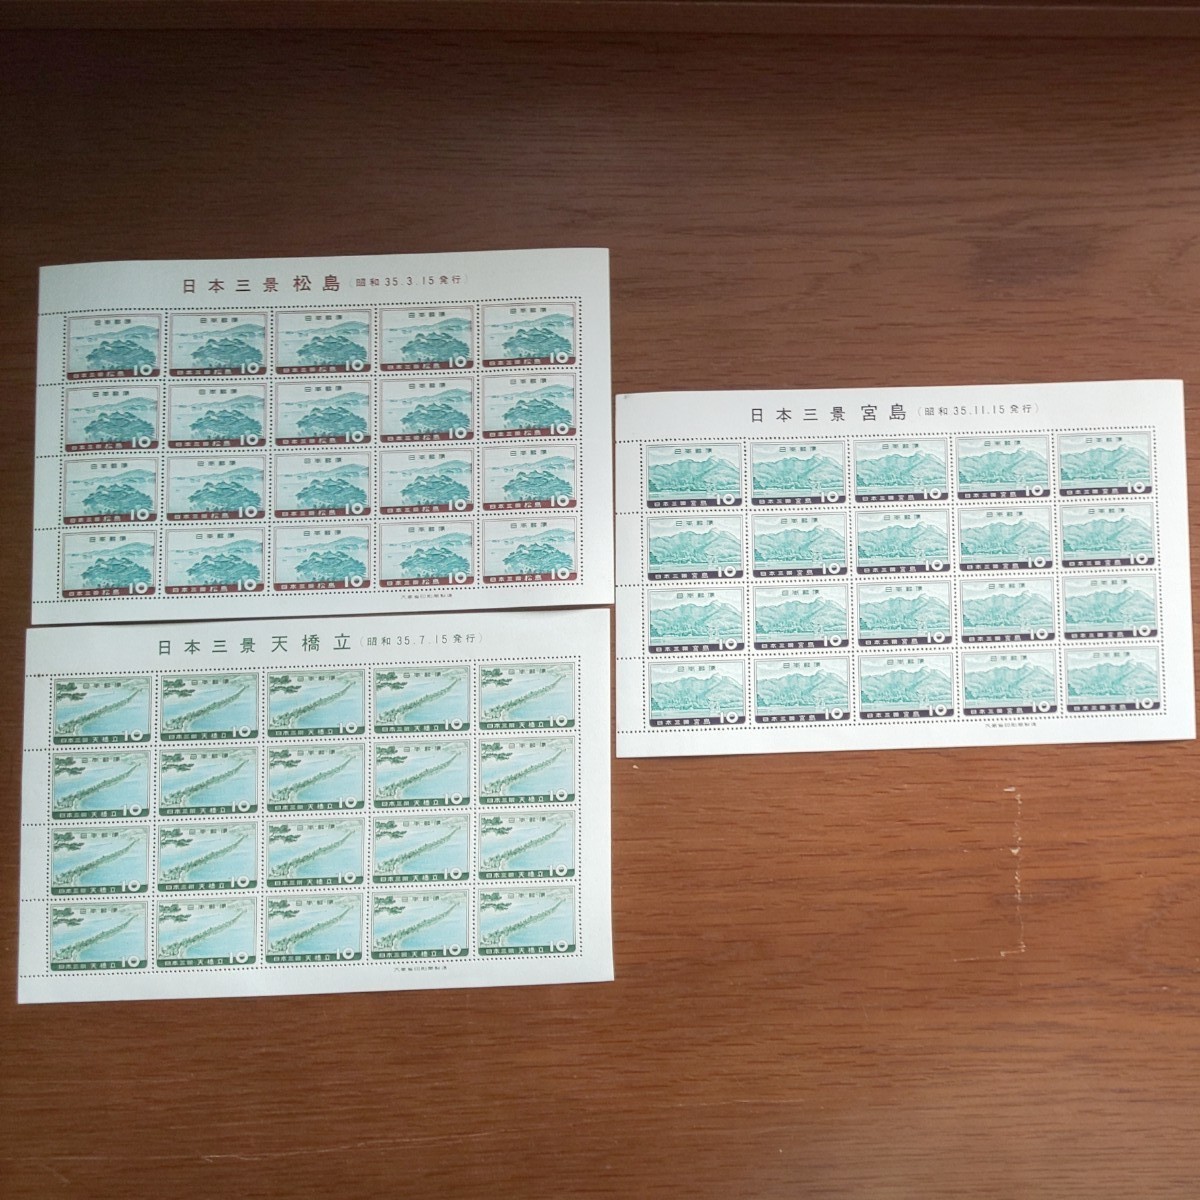 【記念(特殊)切手】1960 日本三景シリーズ 全3シート